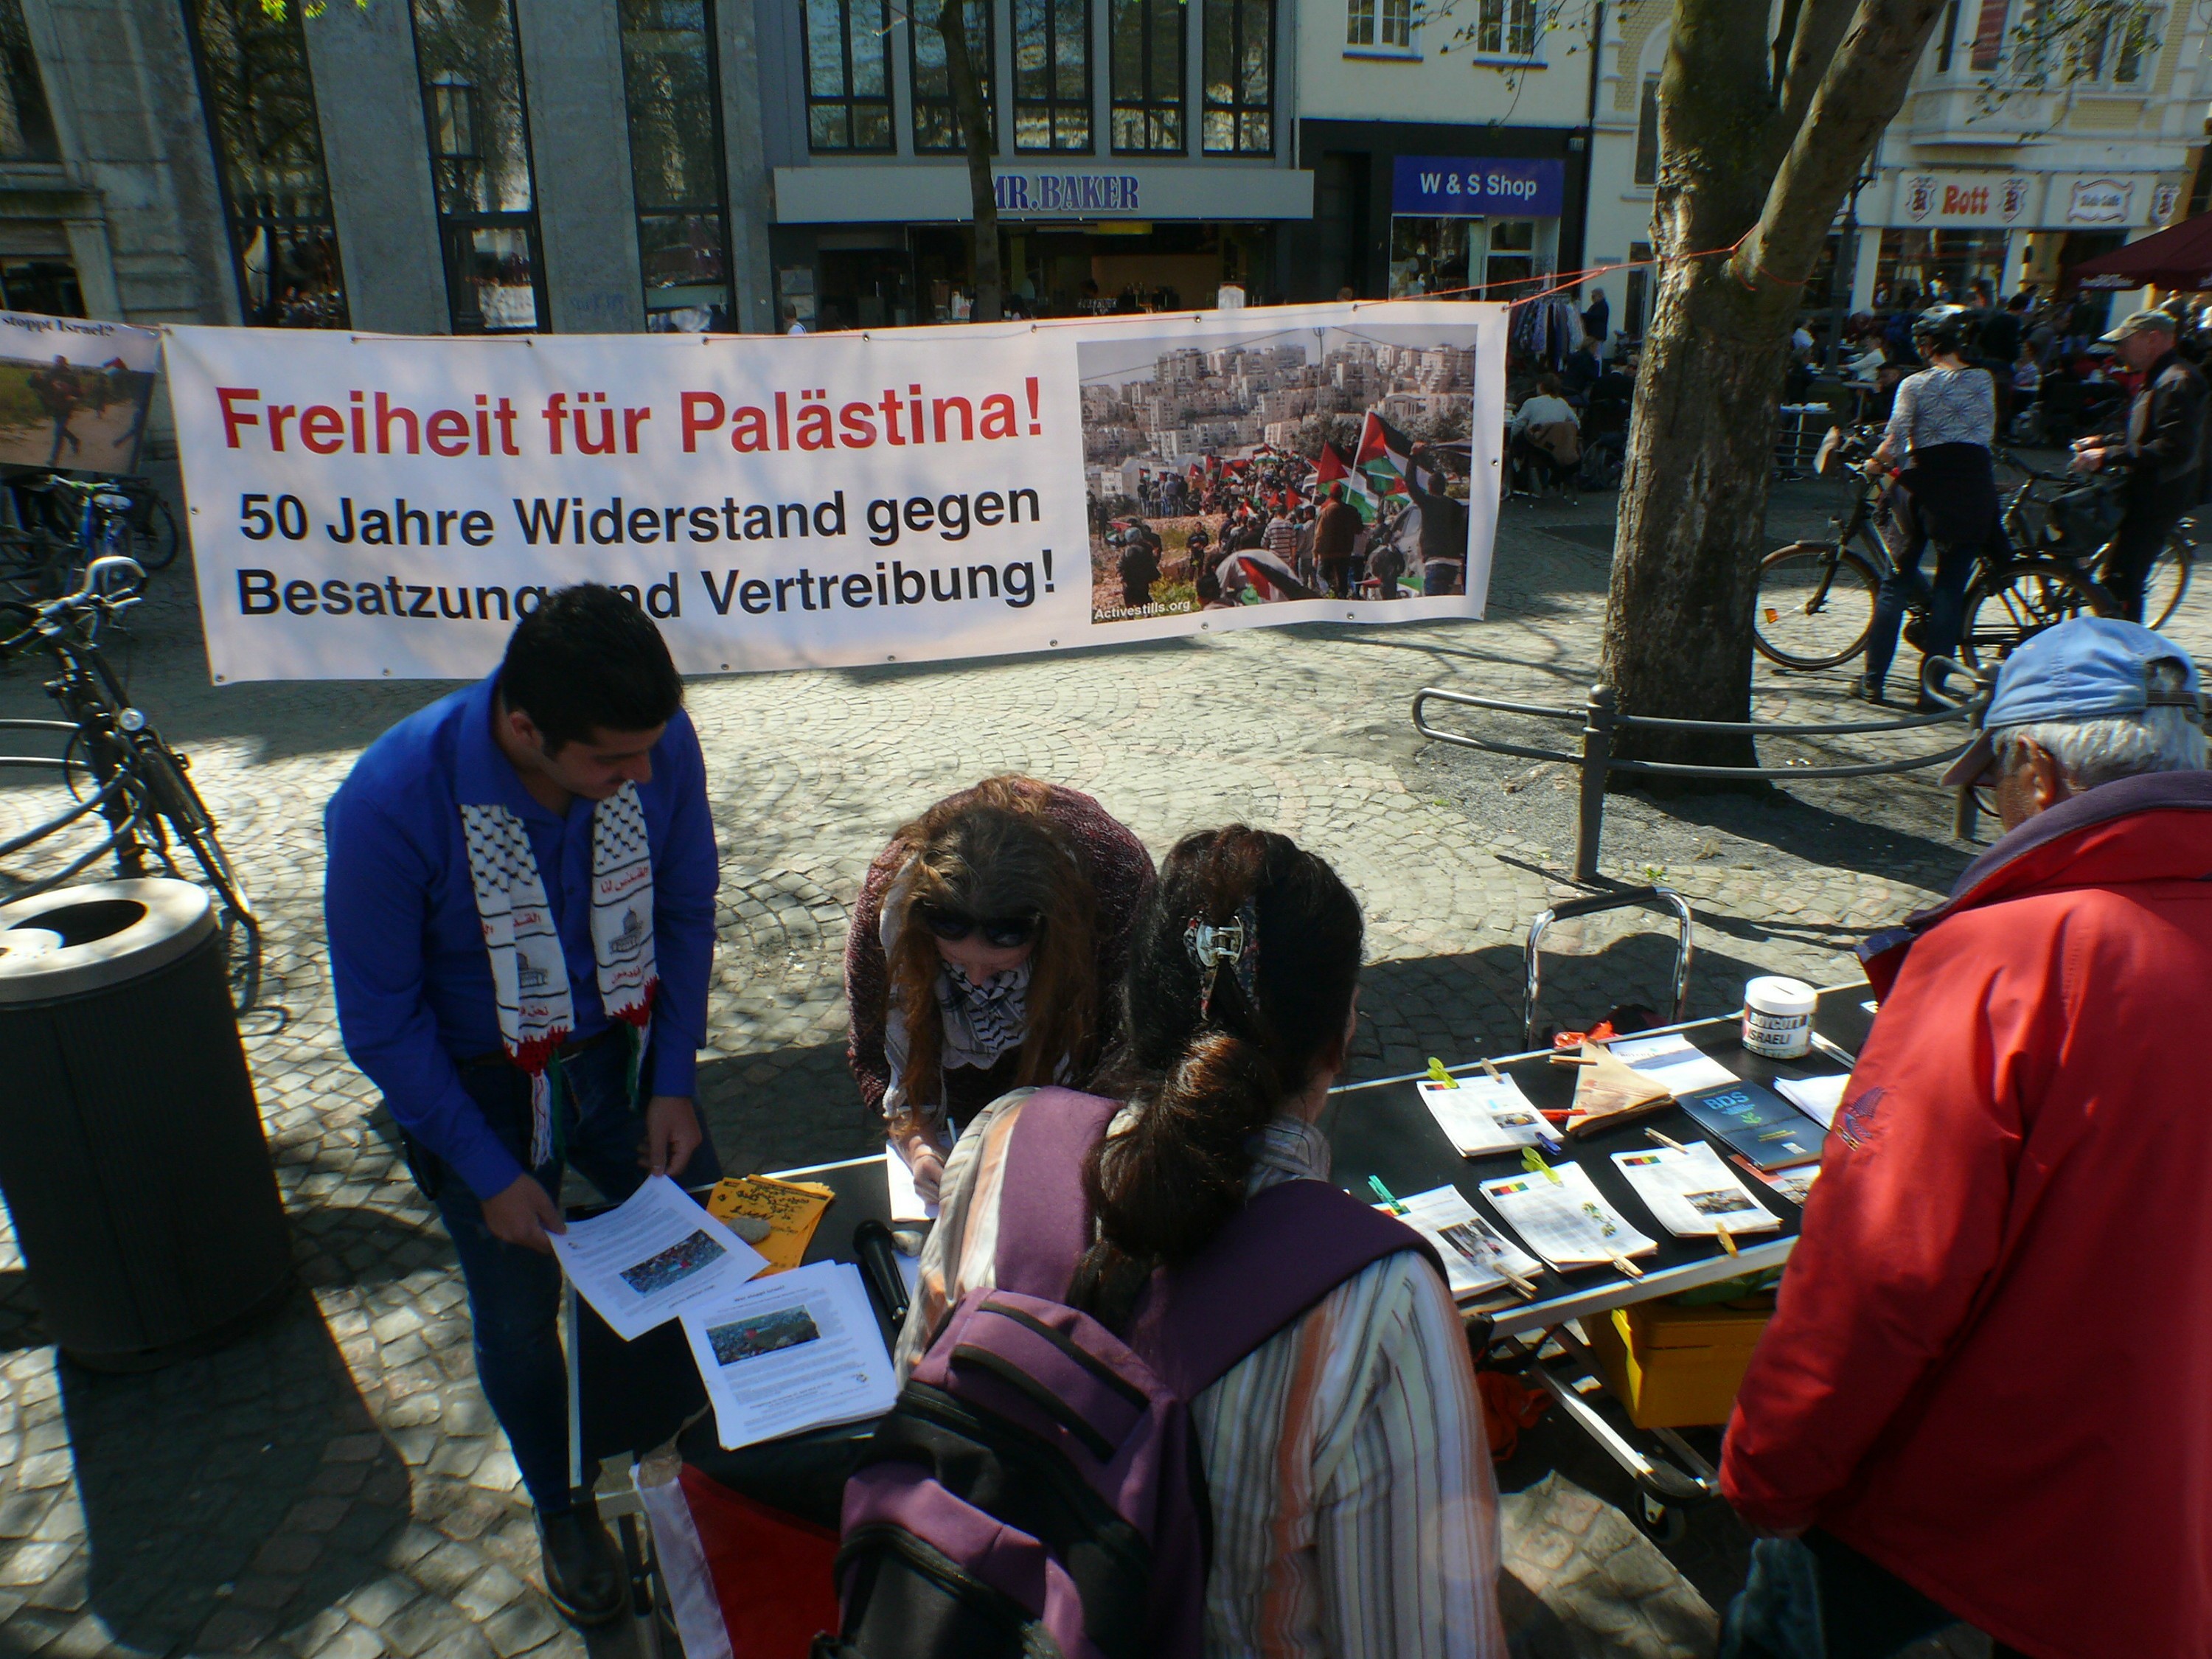 تحت شعار من يوقف إسرائيل ؟ تظاهرة كبيرة في الساحة الرئيسية في مدينة بون الألمانية3.jpg